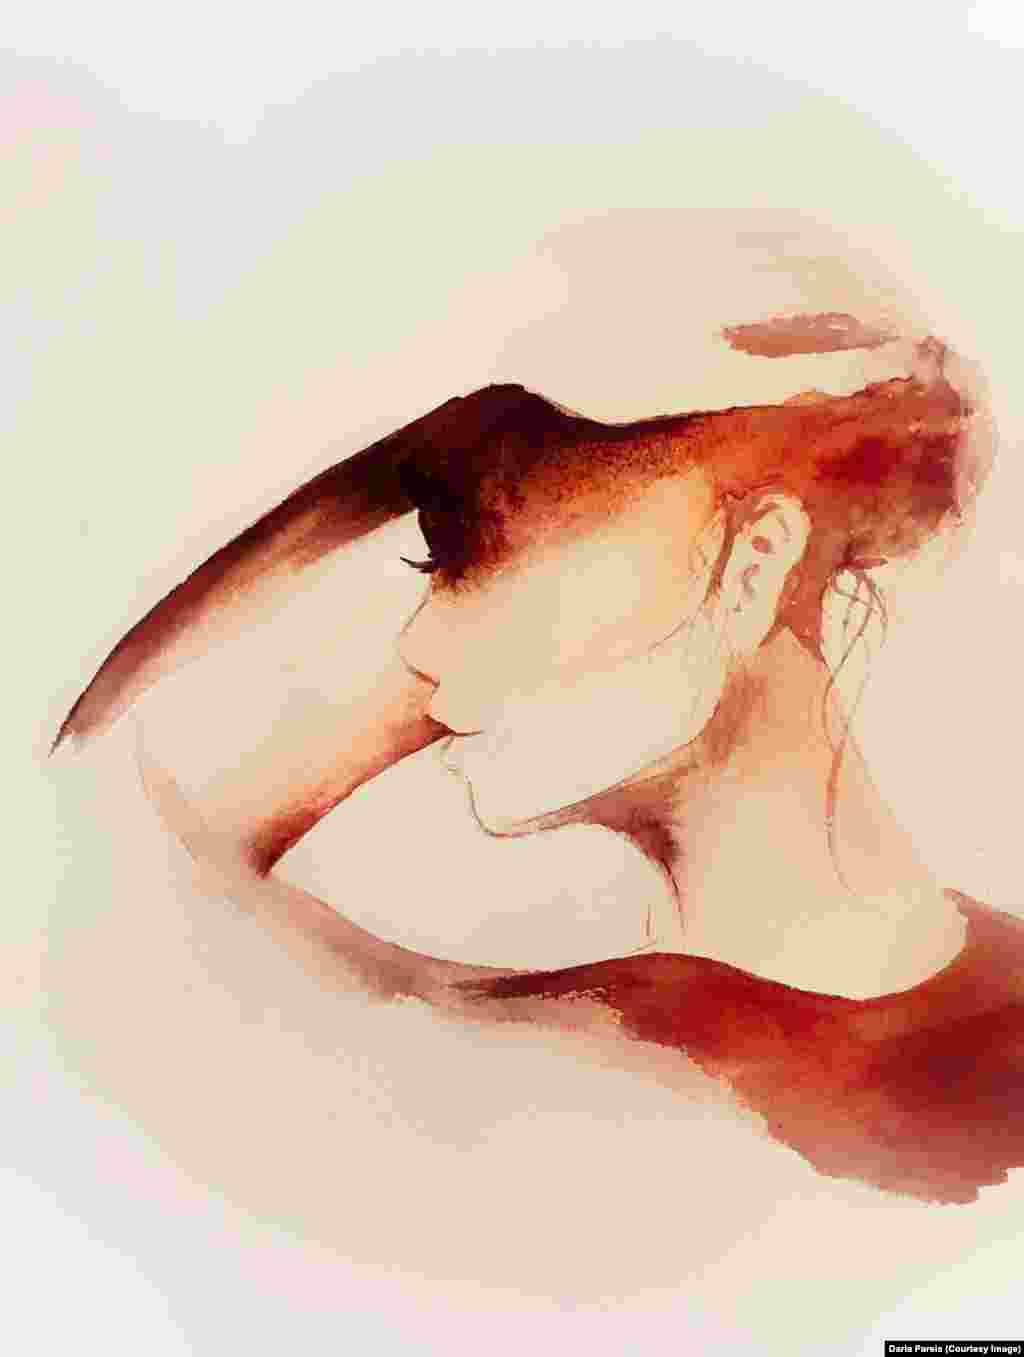 این نقاشی با قهوه طراحی شده و نشان دهنده ای خستگی روحی یک زن ناشی از چالش ها را نشان میدهد.